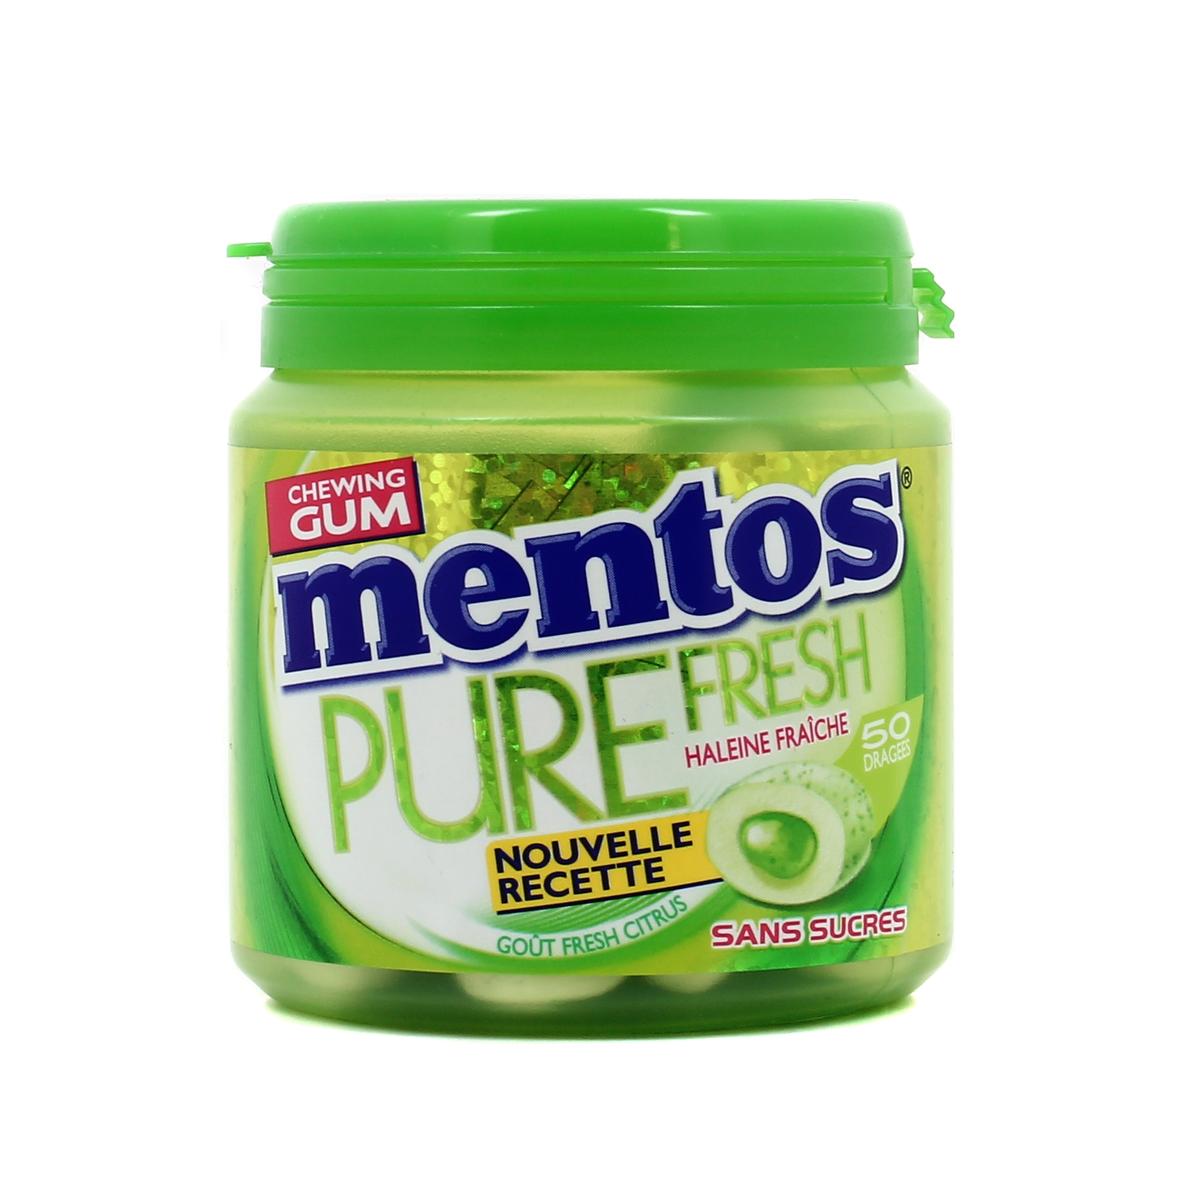 Chewing-gum sans sucre pure fresh goût citrus , Mentos ( 50 dragées)